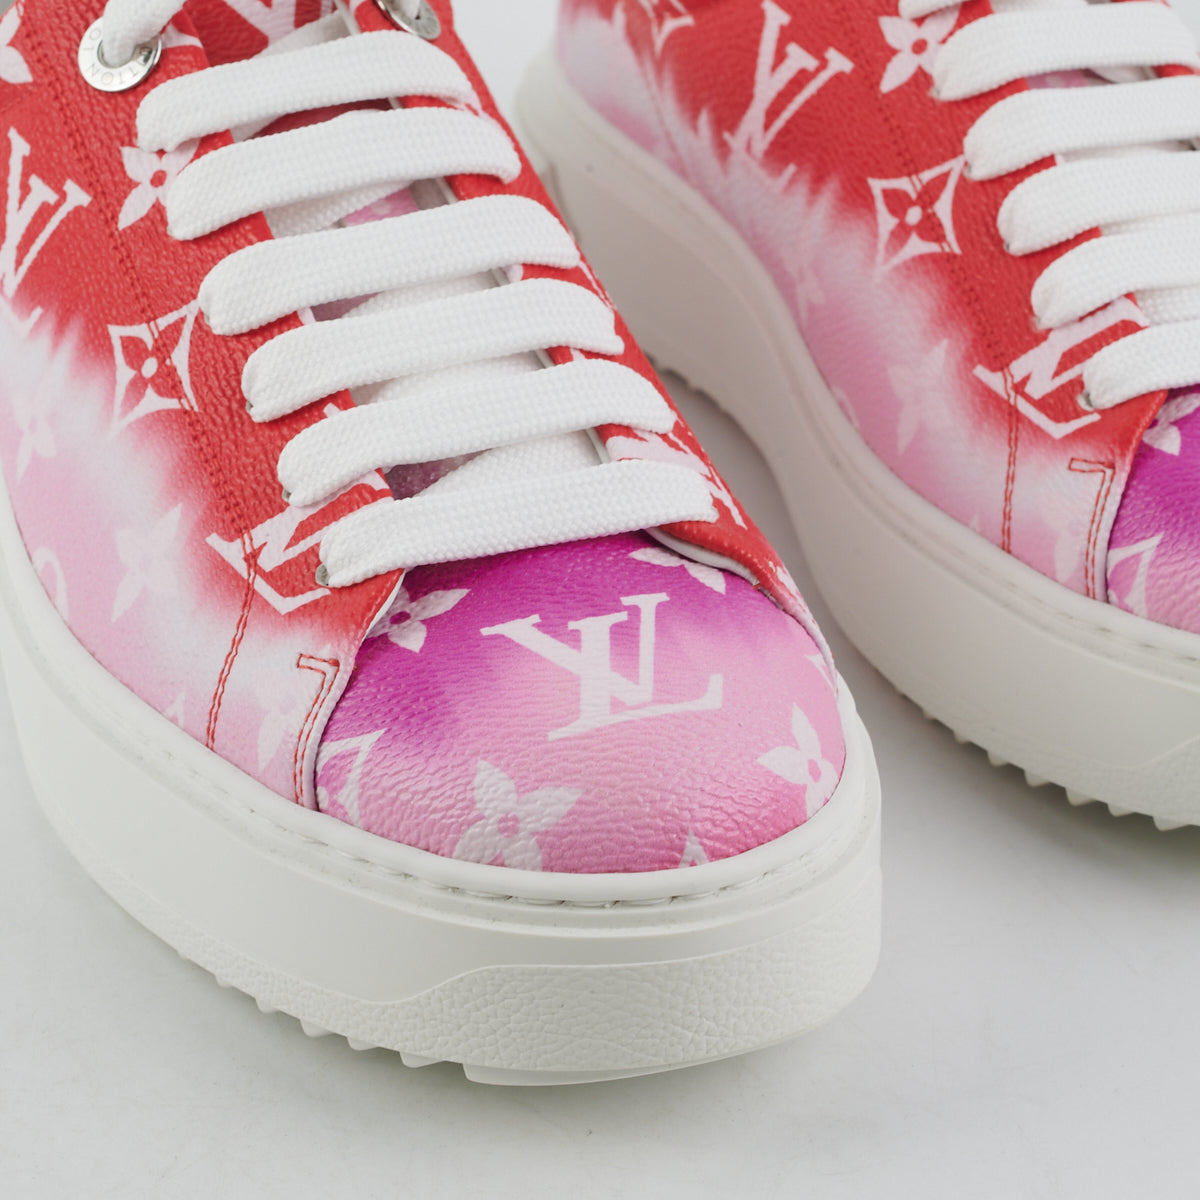 Ladies Louis Vuitton Sneakers Pink in Ridge - Shoes, The Sneaker Plug